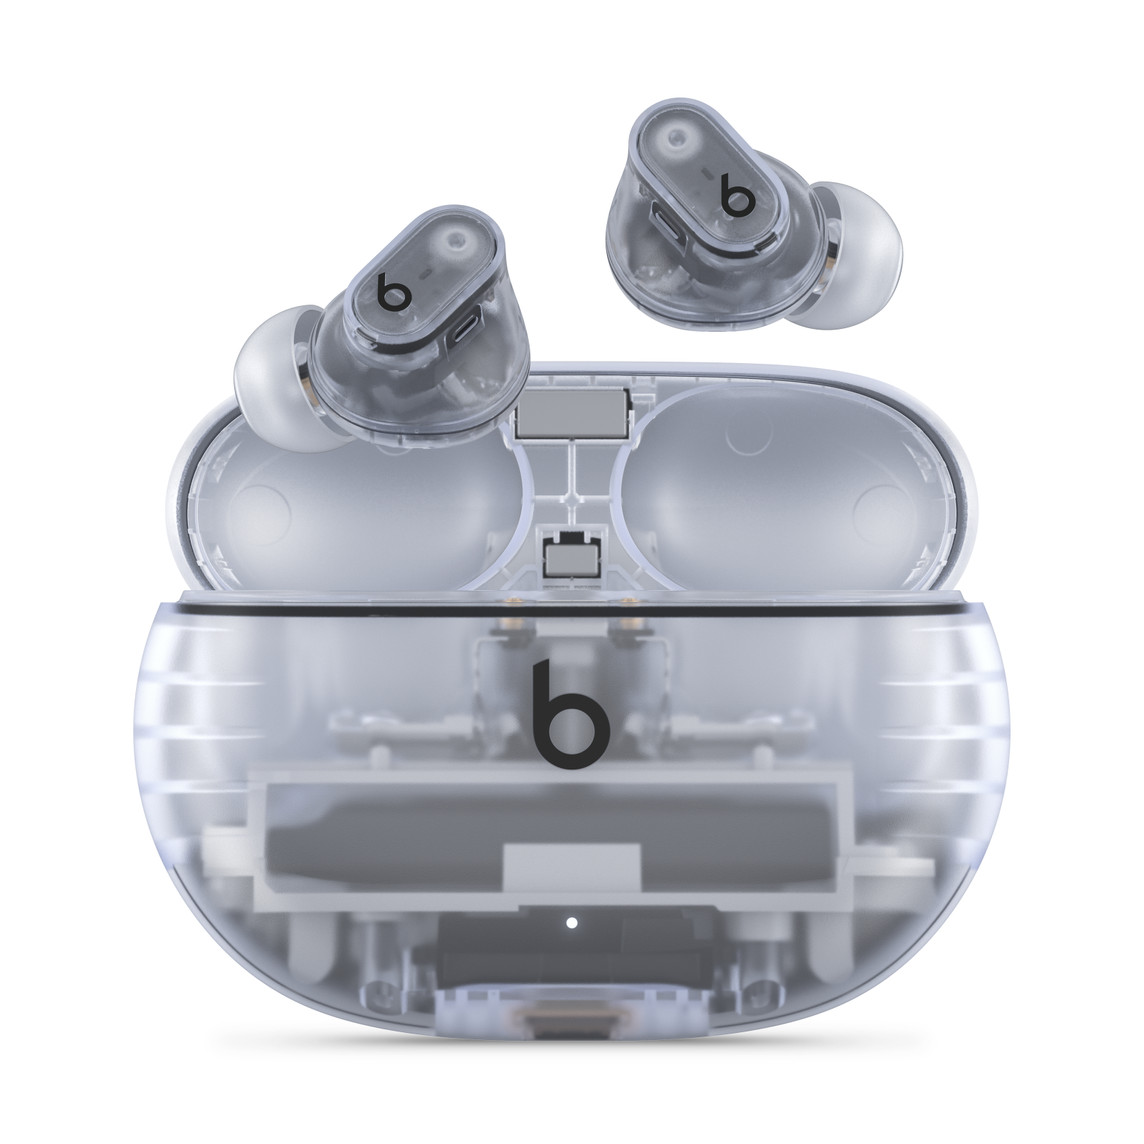 Écouteurs Beats Studio Buds + entièrement sans fil avec annulation du bruit en fini translucide au-dessus de l’étui de recharge pratique. Le logo Beats est visible.